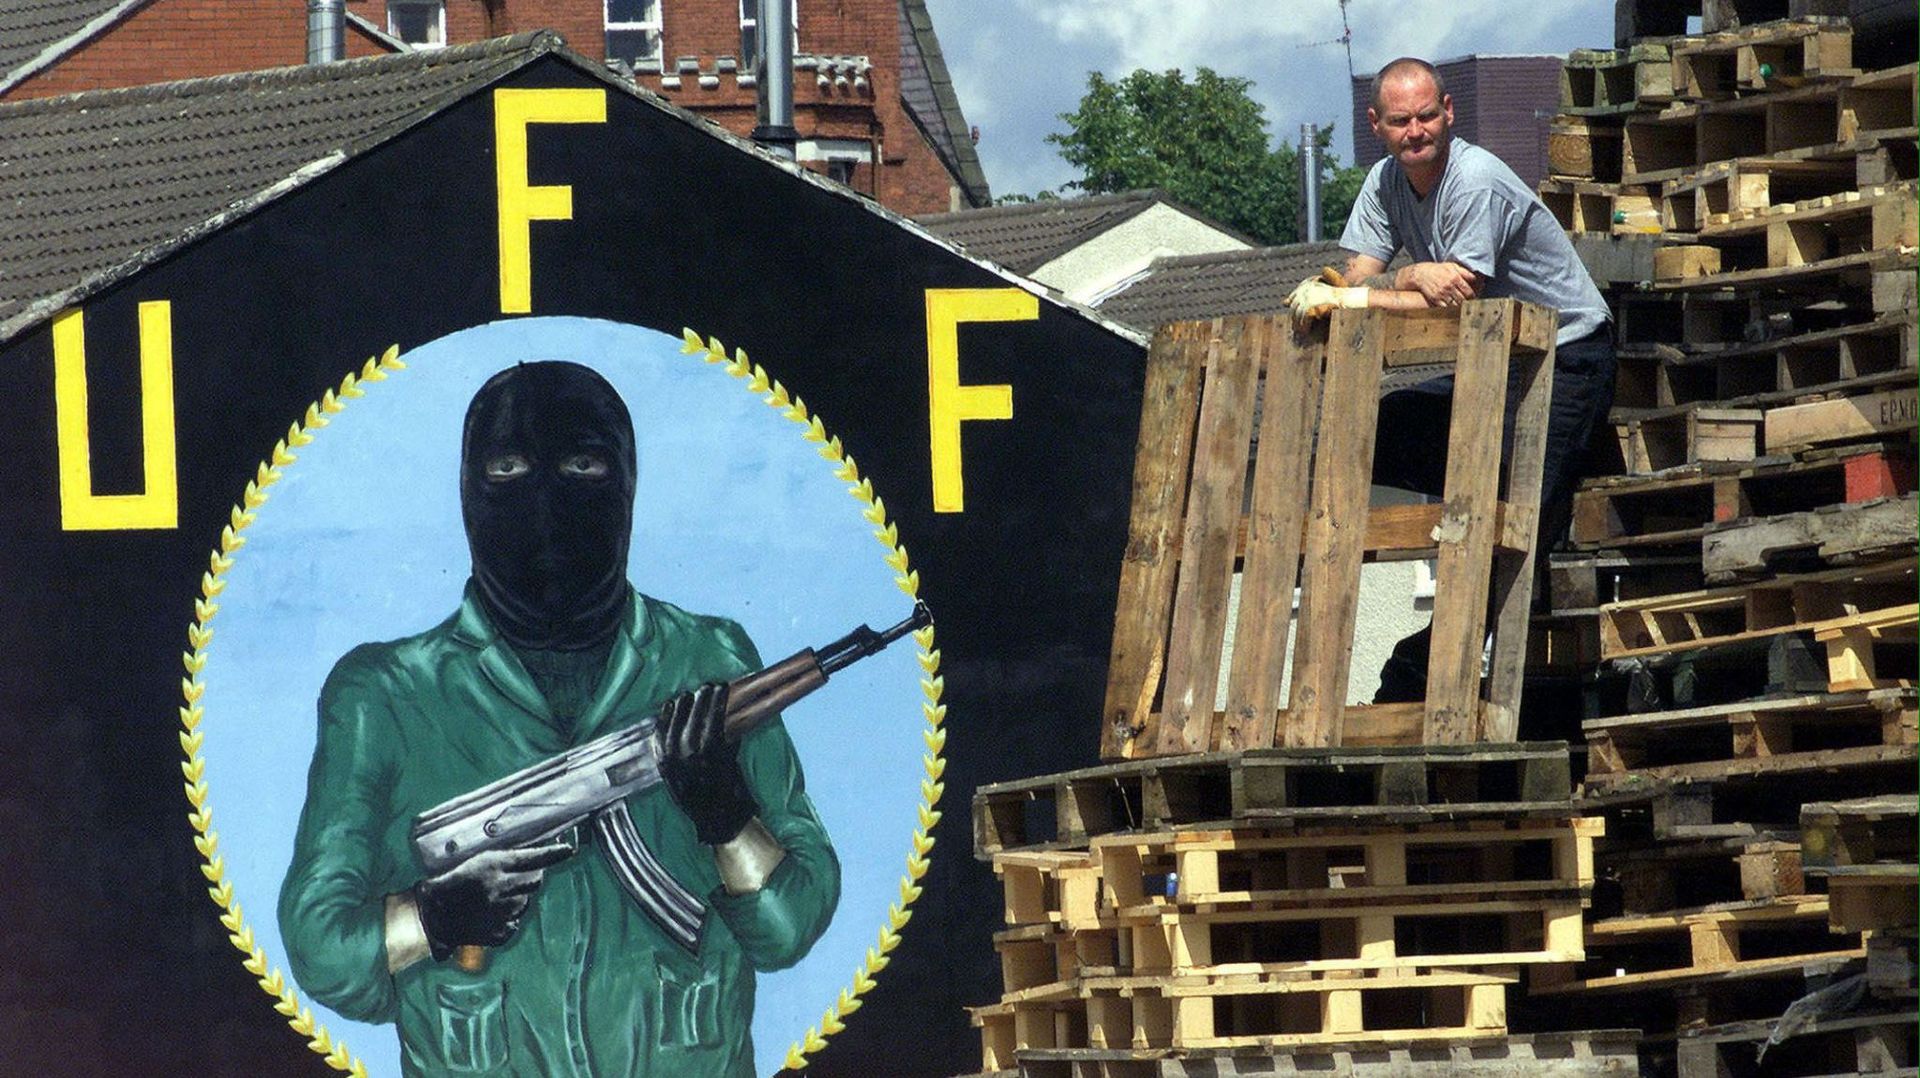 Les attaques ont notamment été perpétrées par les Ulster Freedom Fighters (UFF) (photo de 2001)